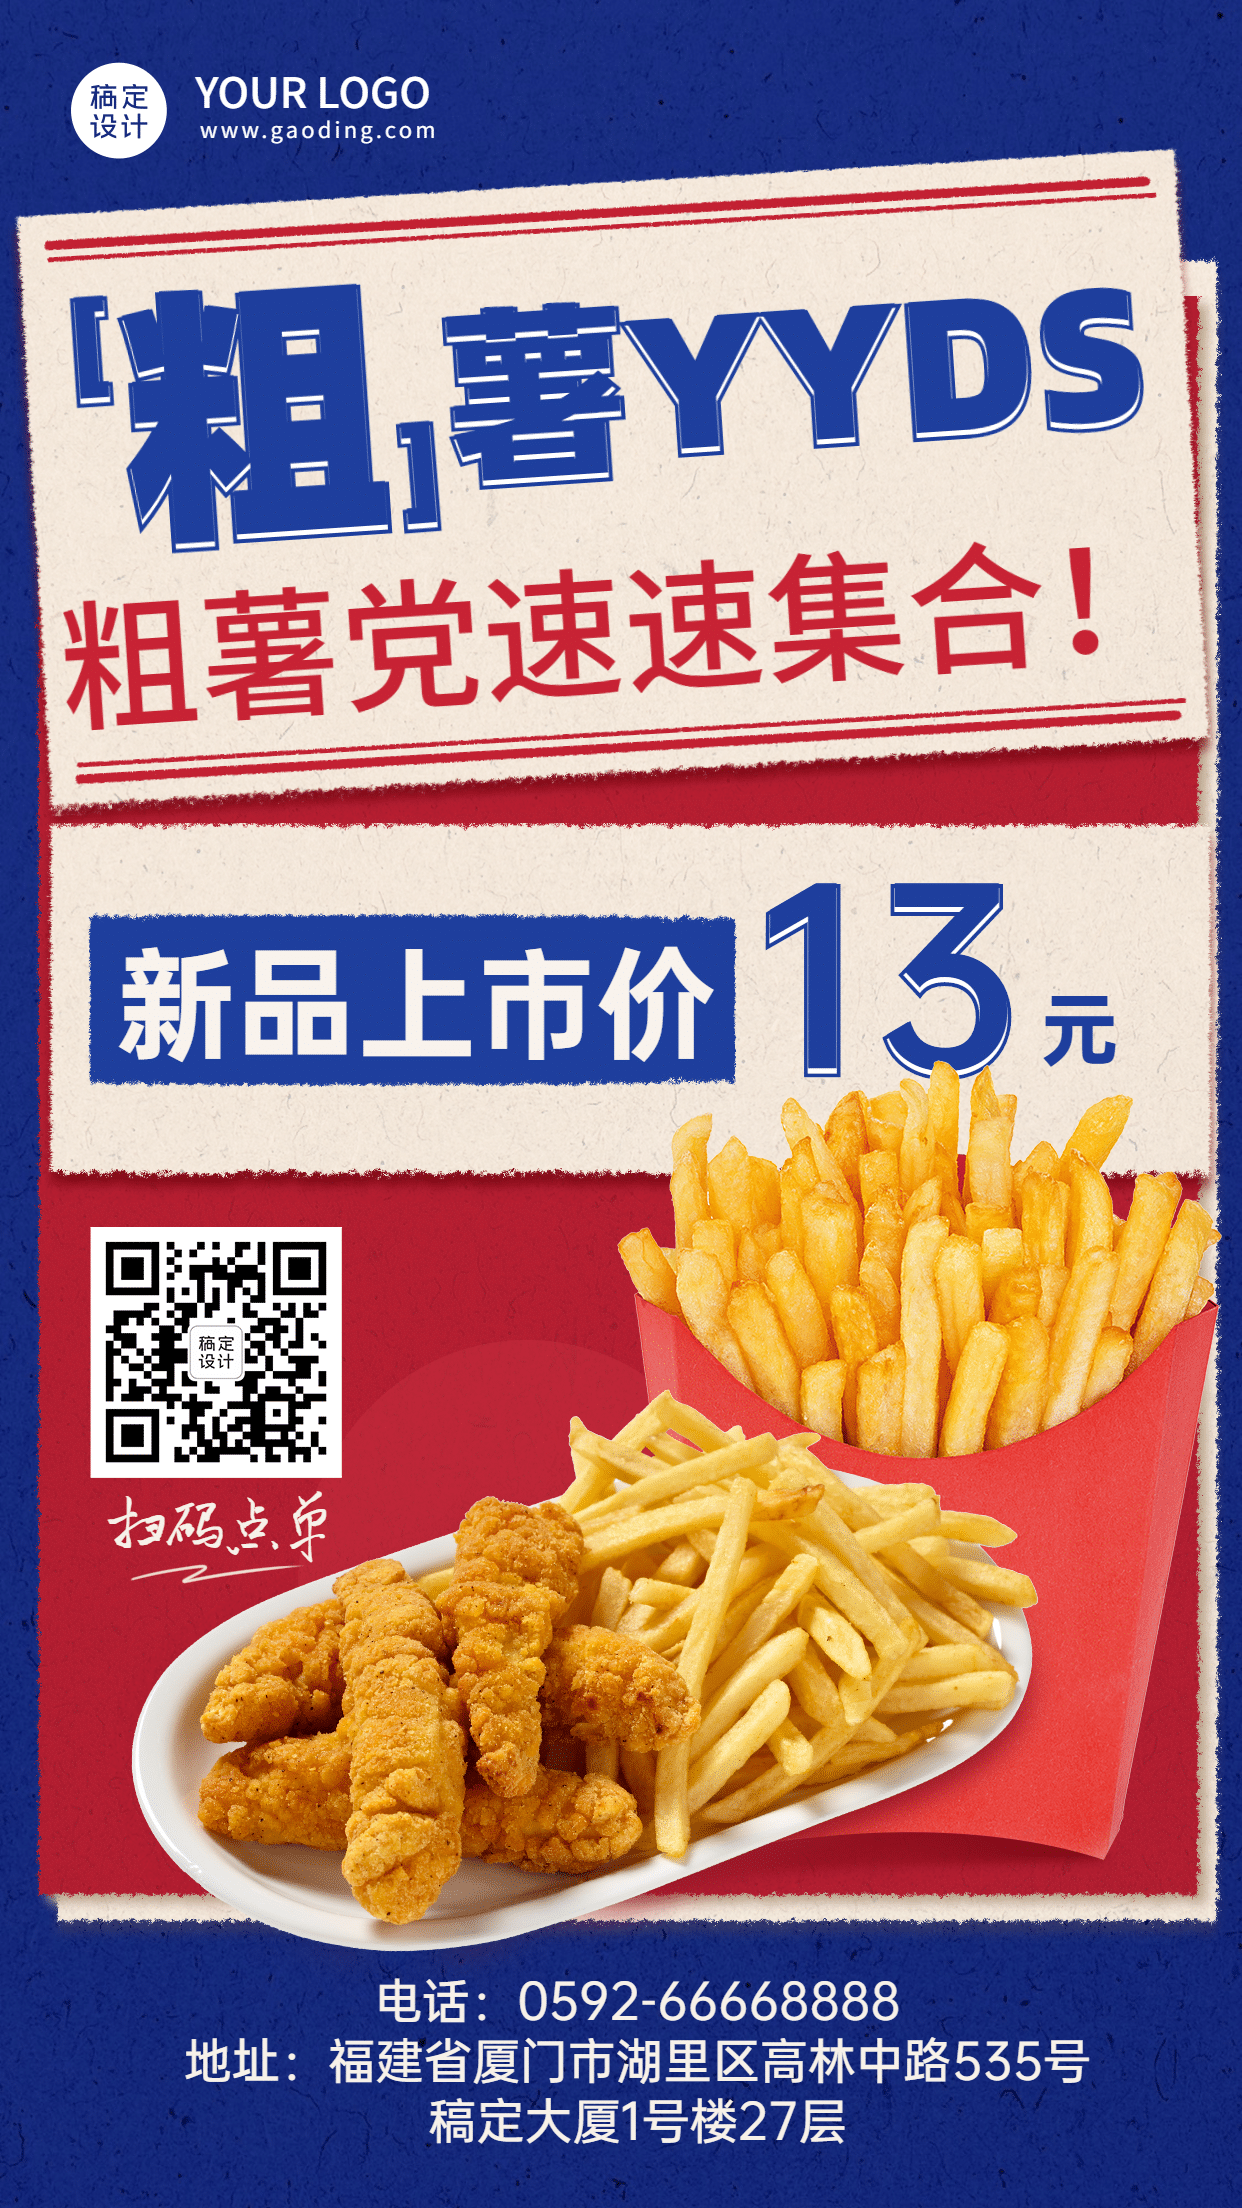 炸鸡汉堡新品上市实景手机海报预览效果